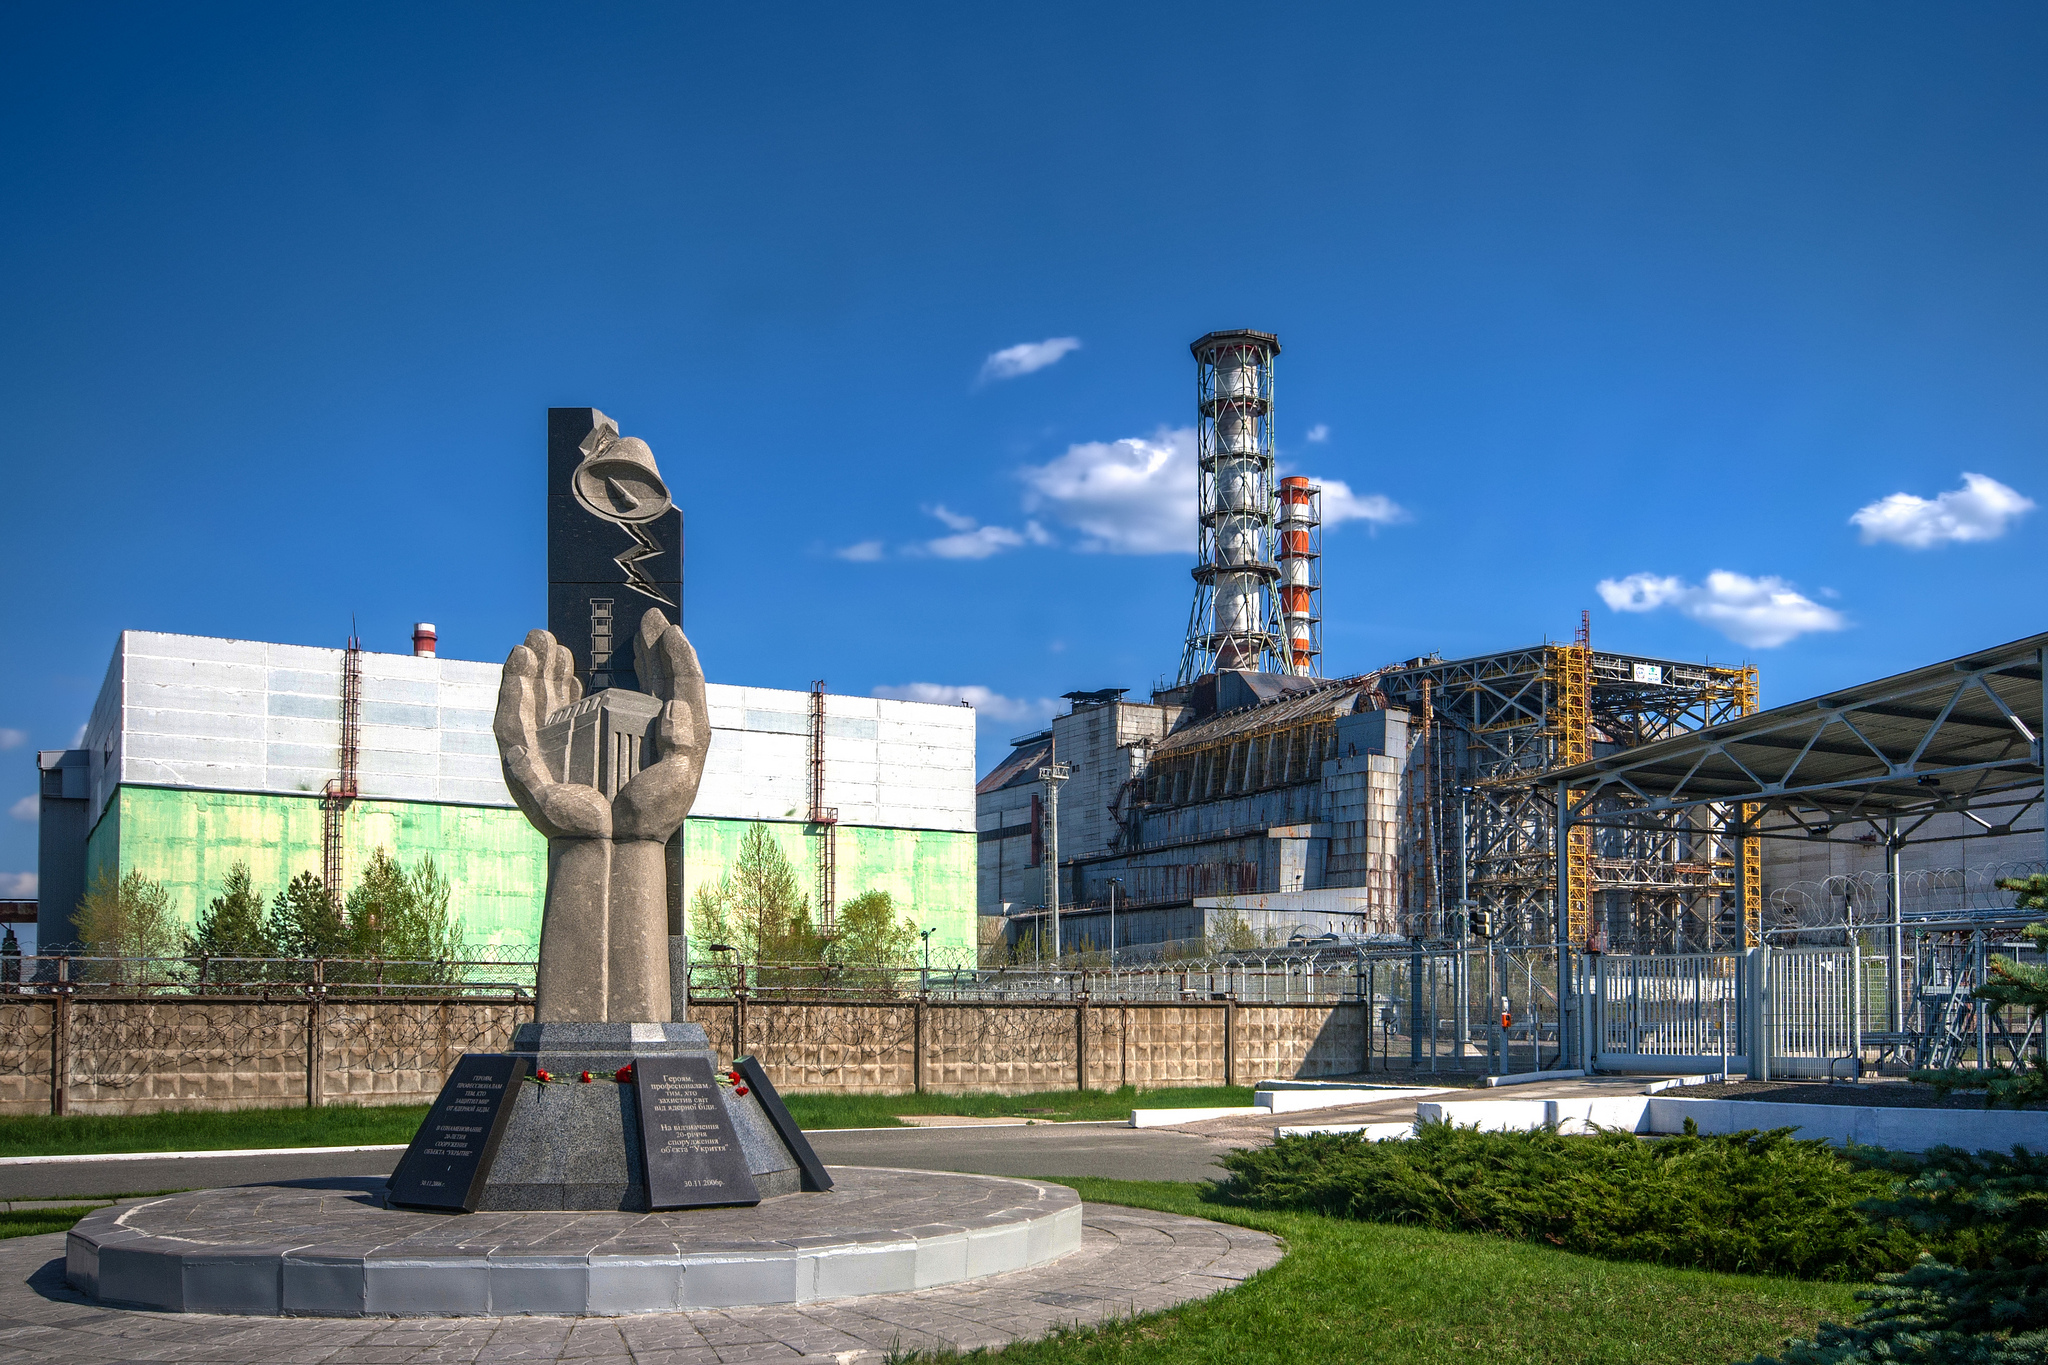 Ukraina-ekskursiya_v_chernobyl-flickr.com-Roads_Less_Traveled_Photography